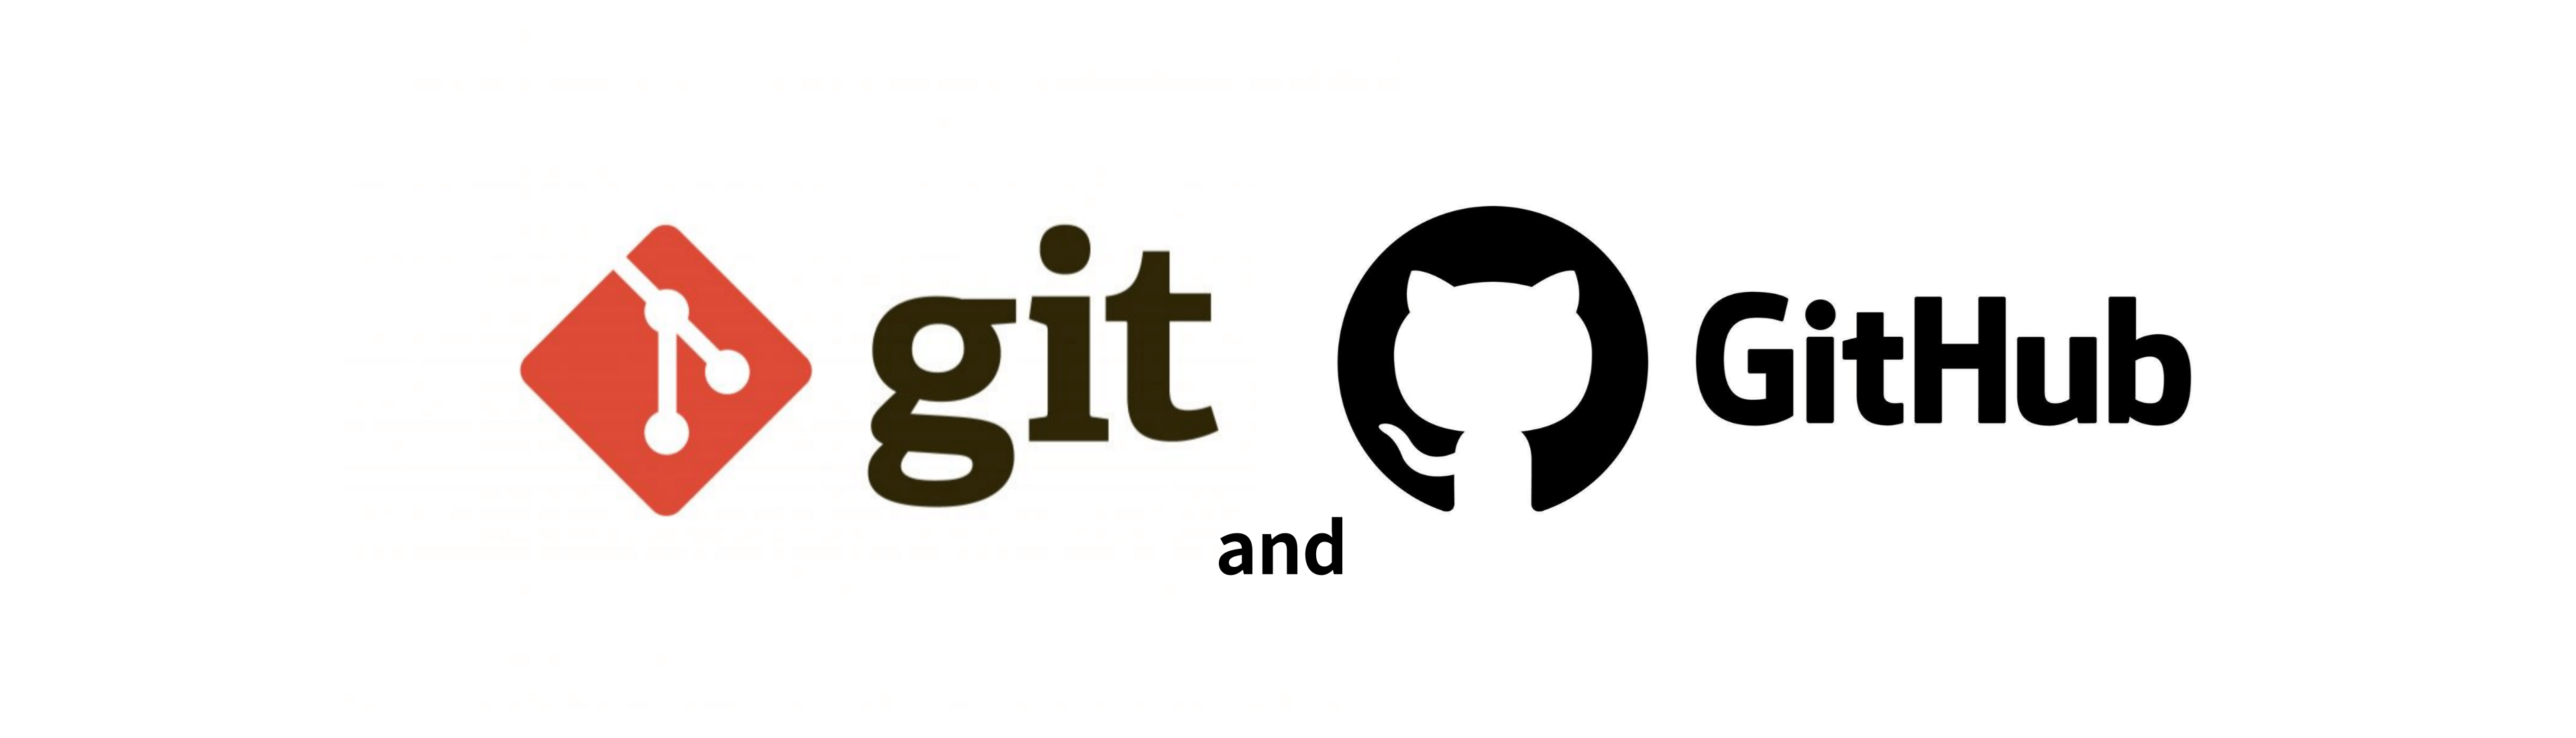 git-logo-and-github-logo-image